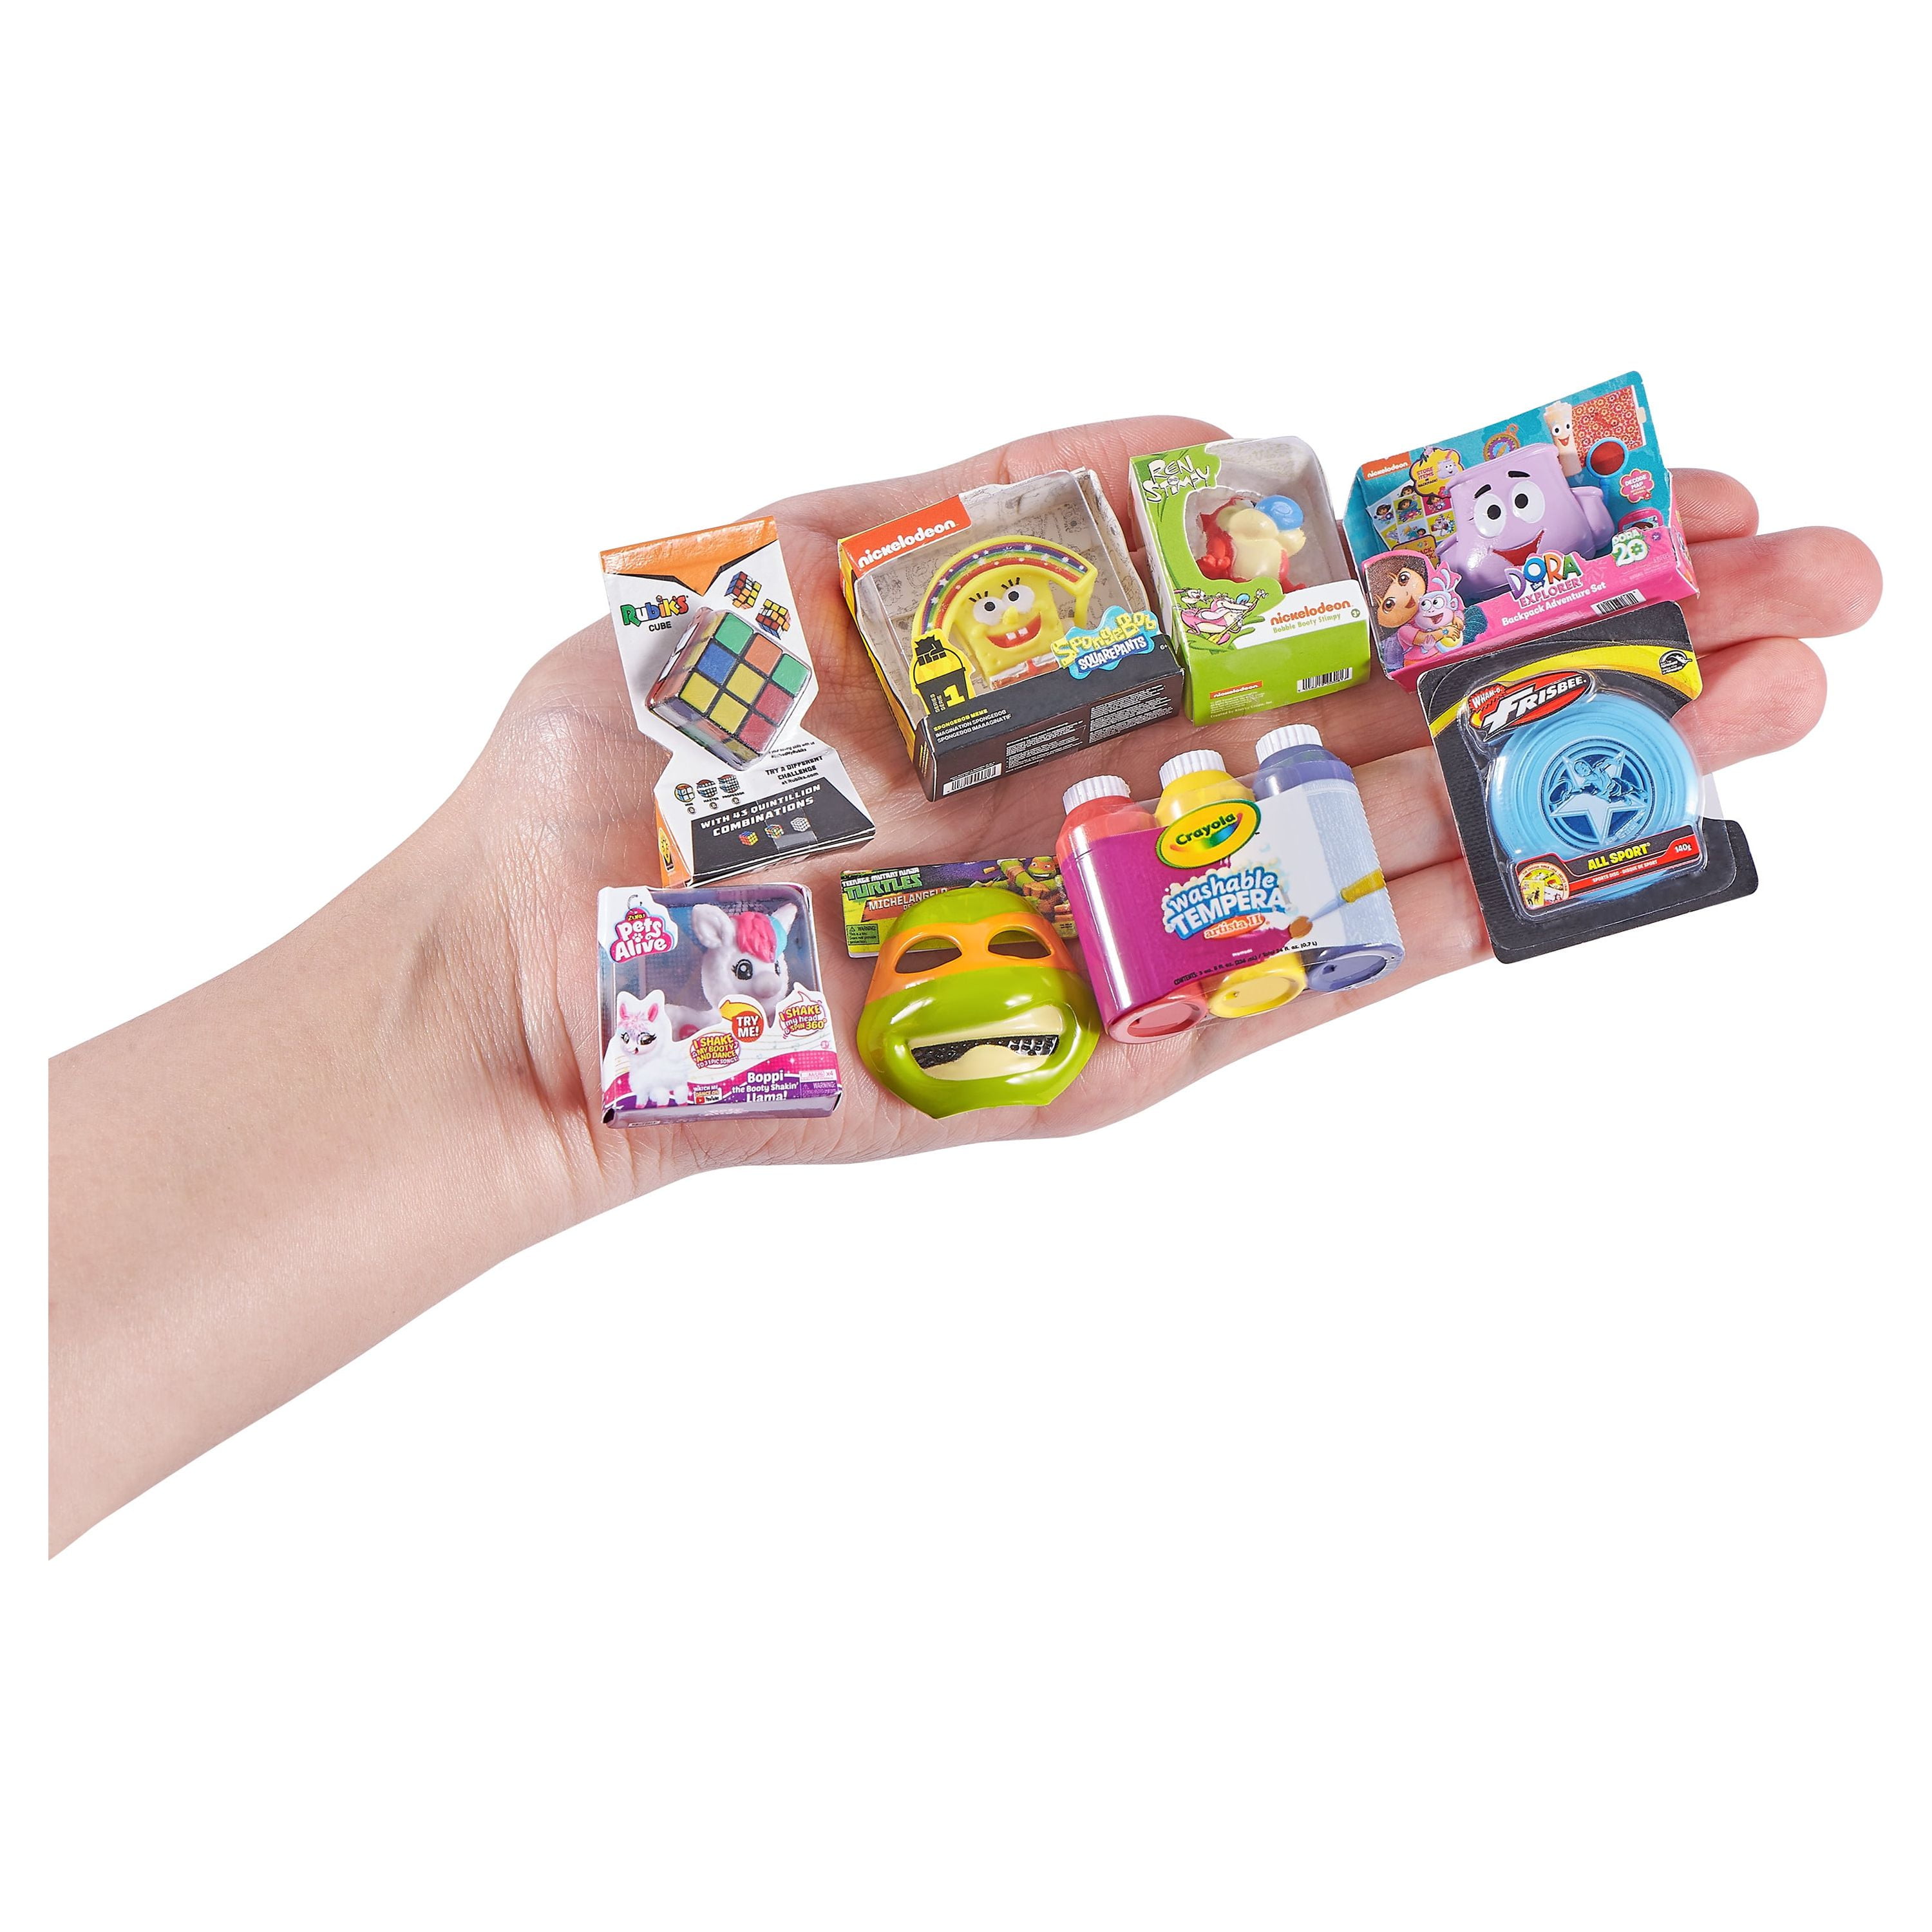 HTF Zuru 5 Surprise Mini Brands SHOPPING BASKET 117 Miniature